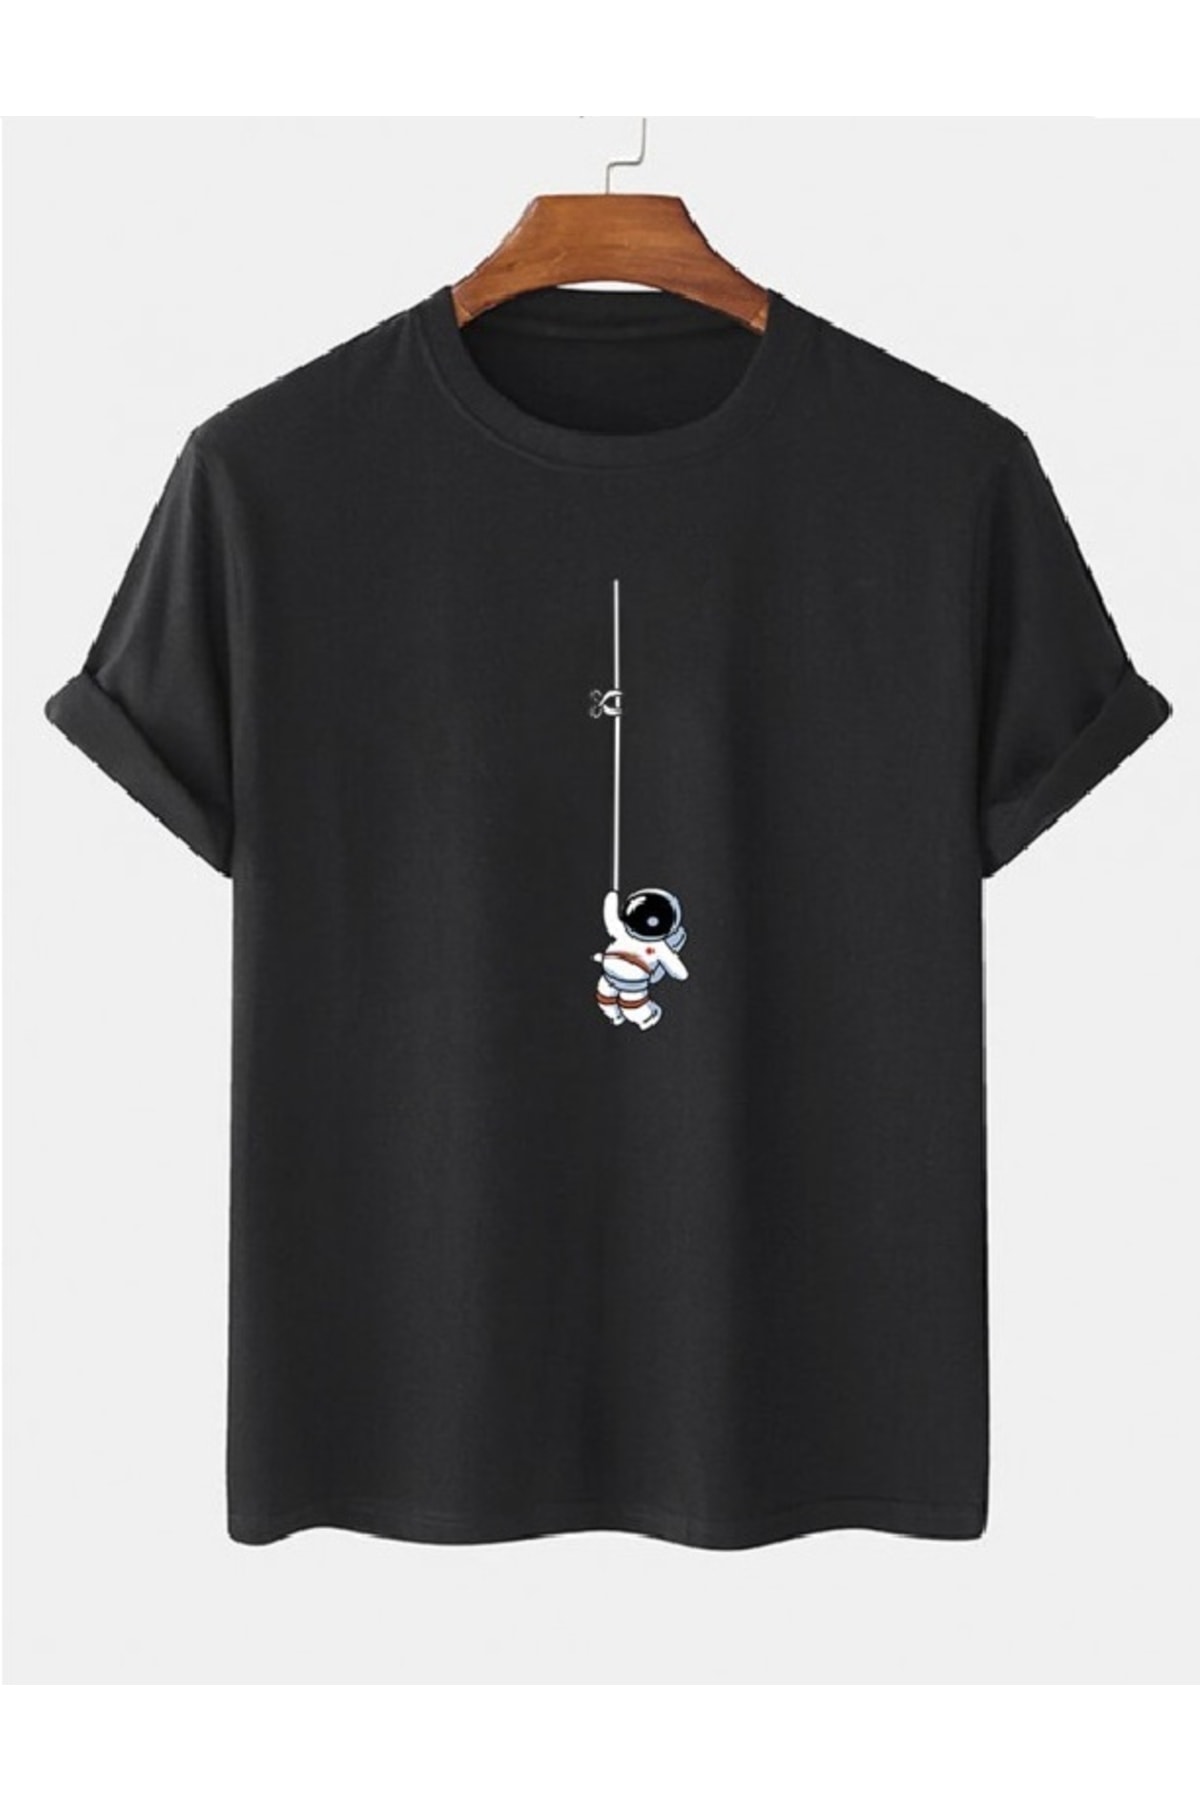 Черная футболка унисекс с принтом «Астронавт» оверсайз MOONBULL, черный